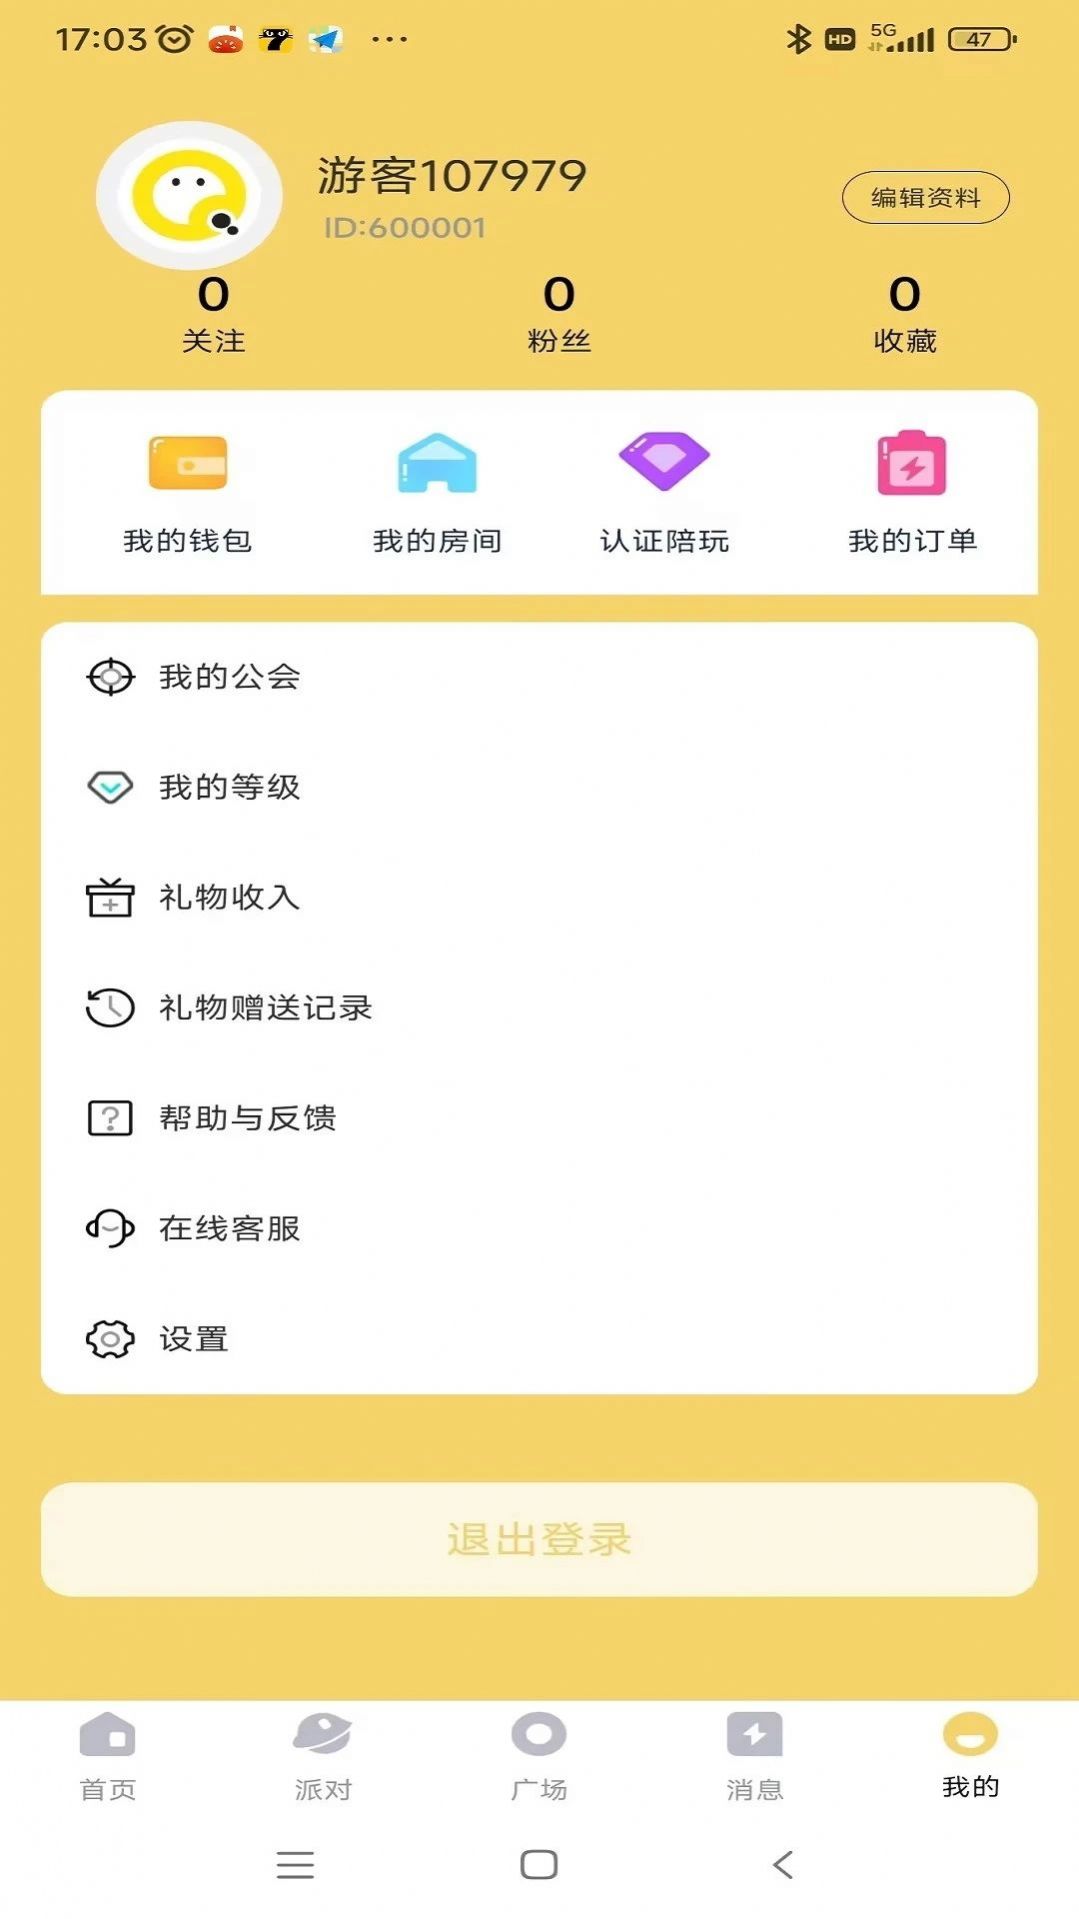 雷神语音app下载,雷神语音app最新版 v1.0.7